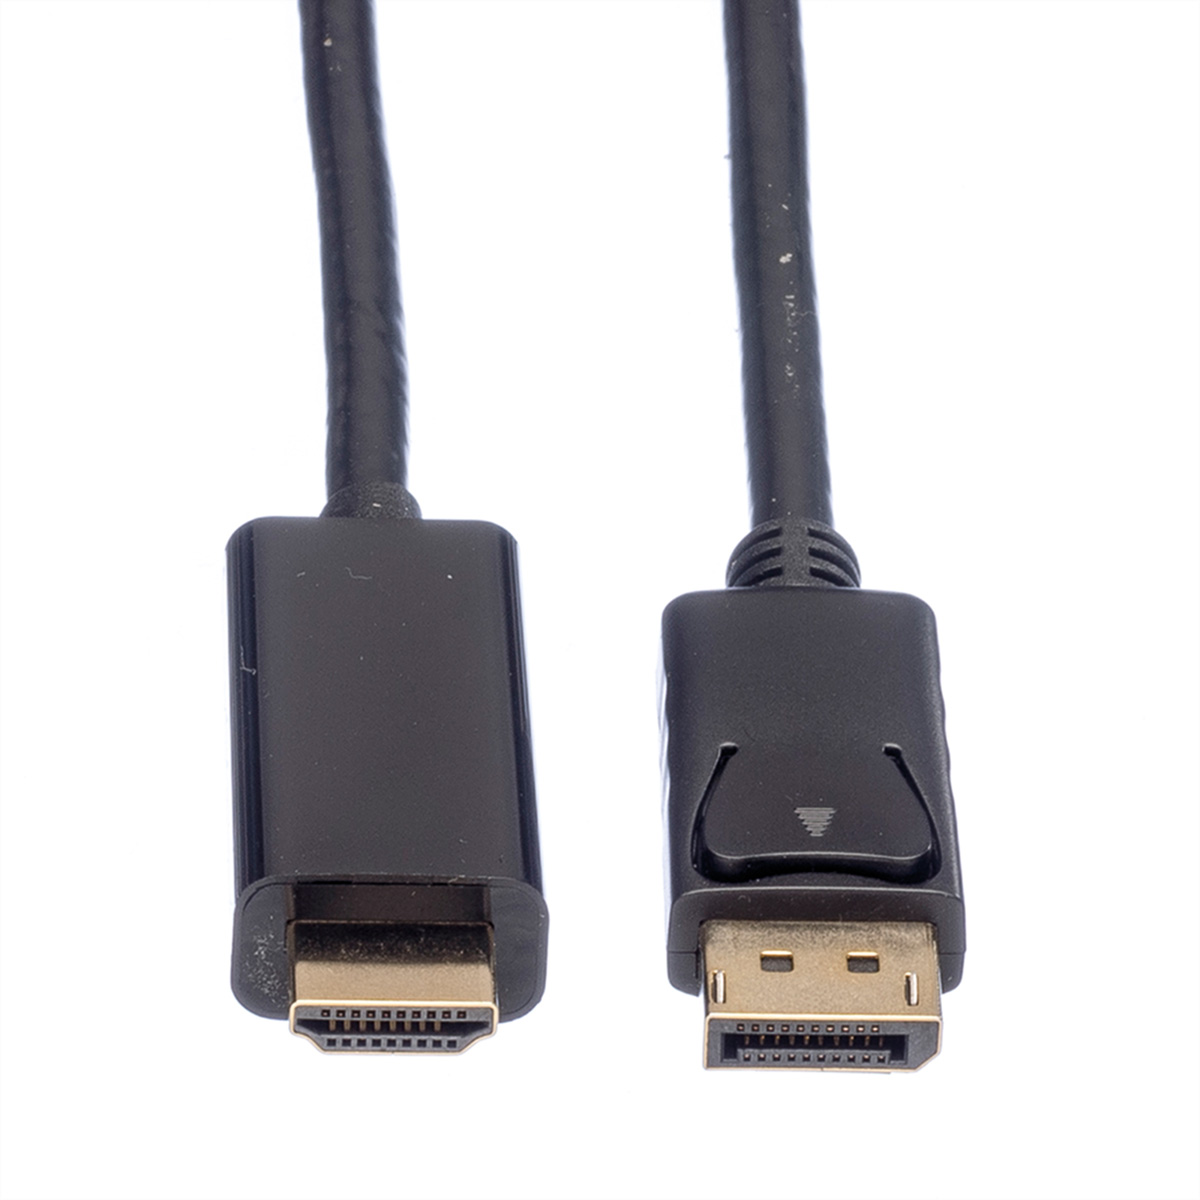 ROLINE DisplayPort Kabel DP - UHDTV, DP-UHDTV-Kabel, m 5 ST/ST